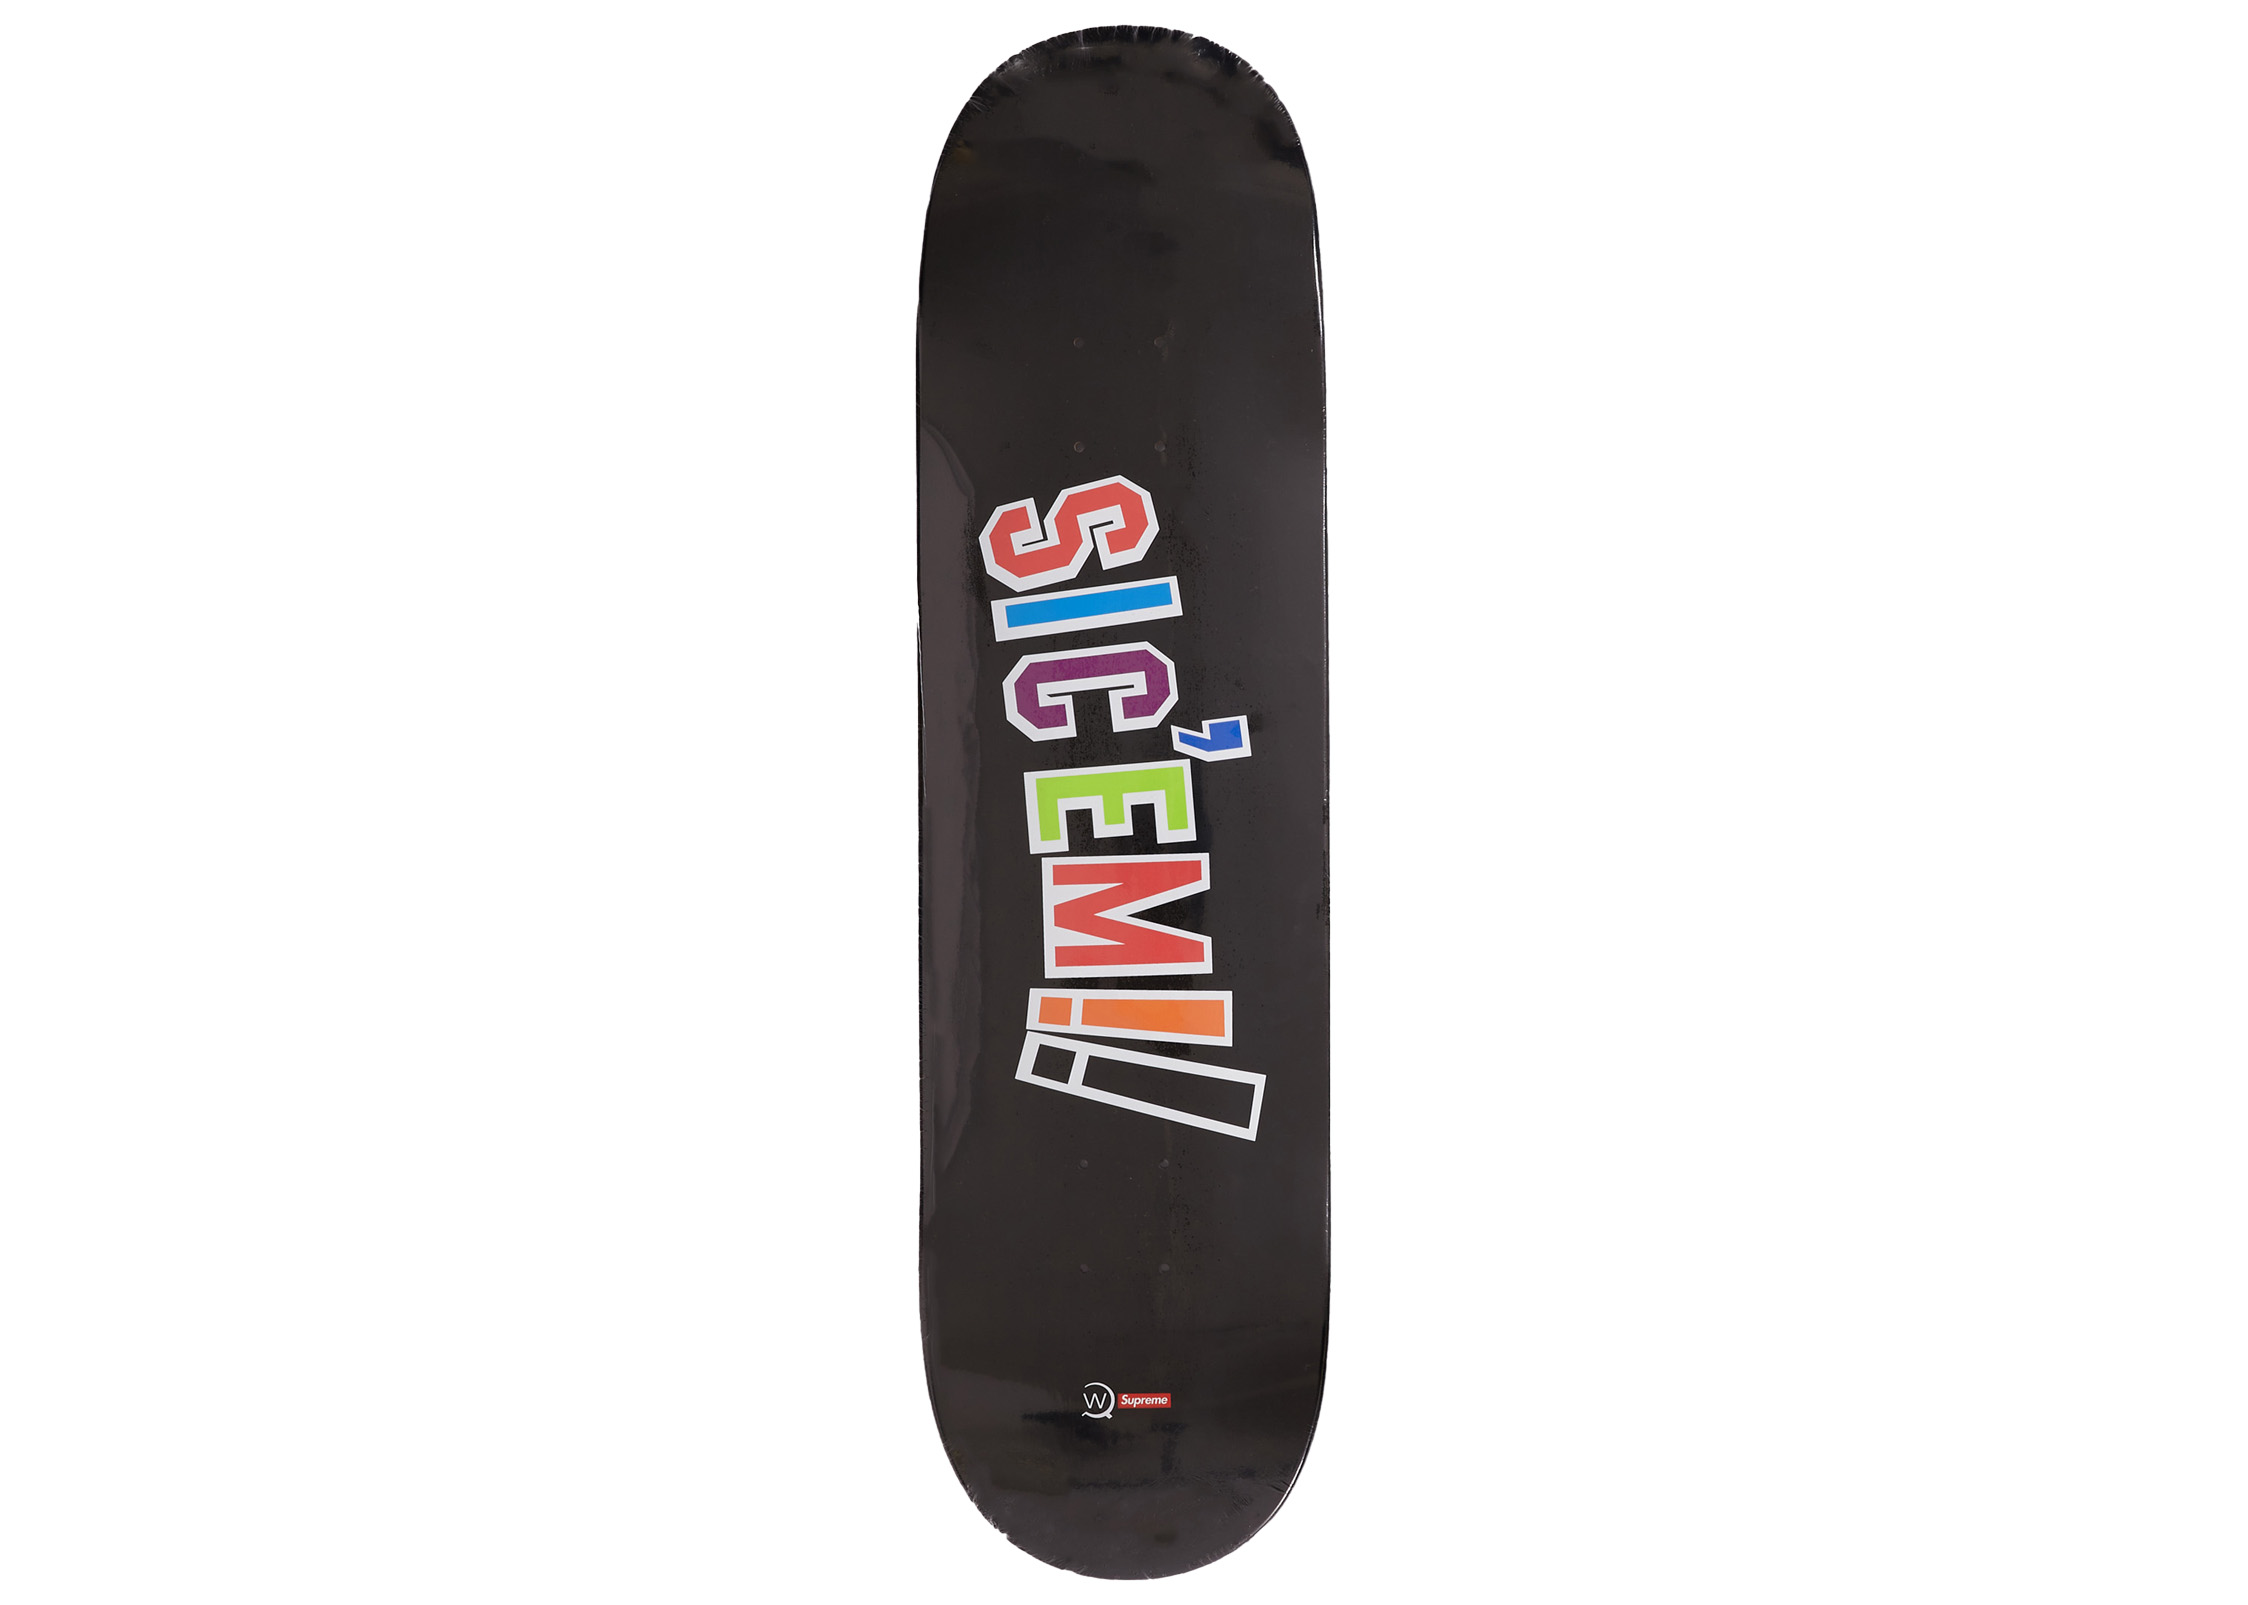 Supreme Airbrushed Floral Skateboard Deck Black/White Set - US